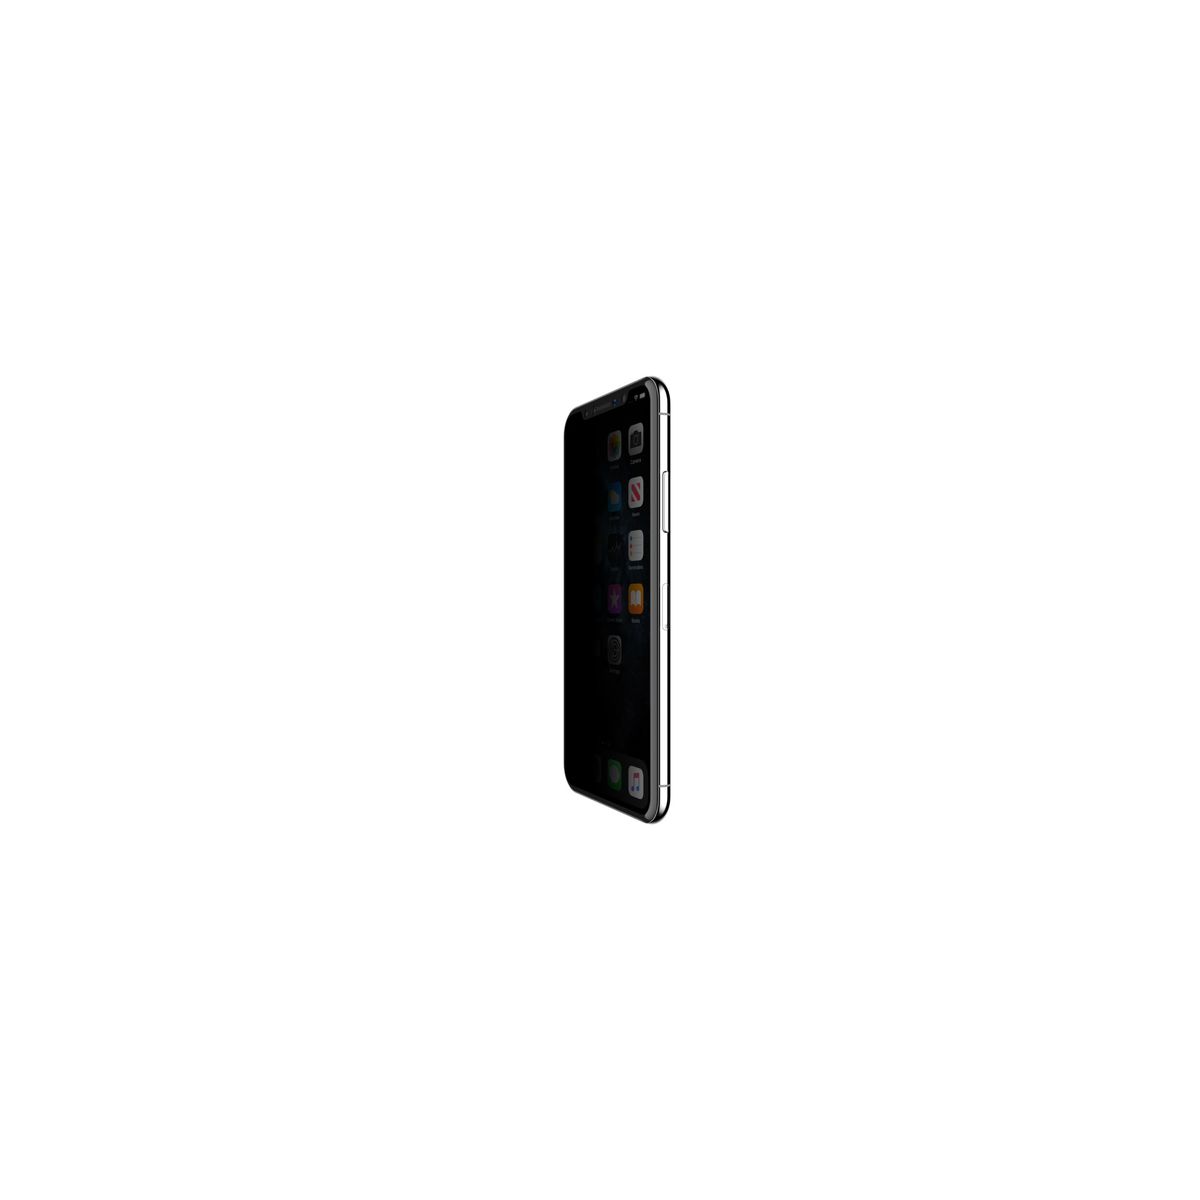 Protector de pantalla InvisiGlass Ultra de Belkin para el iPhone